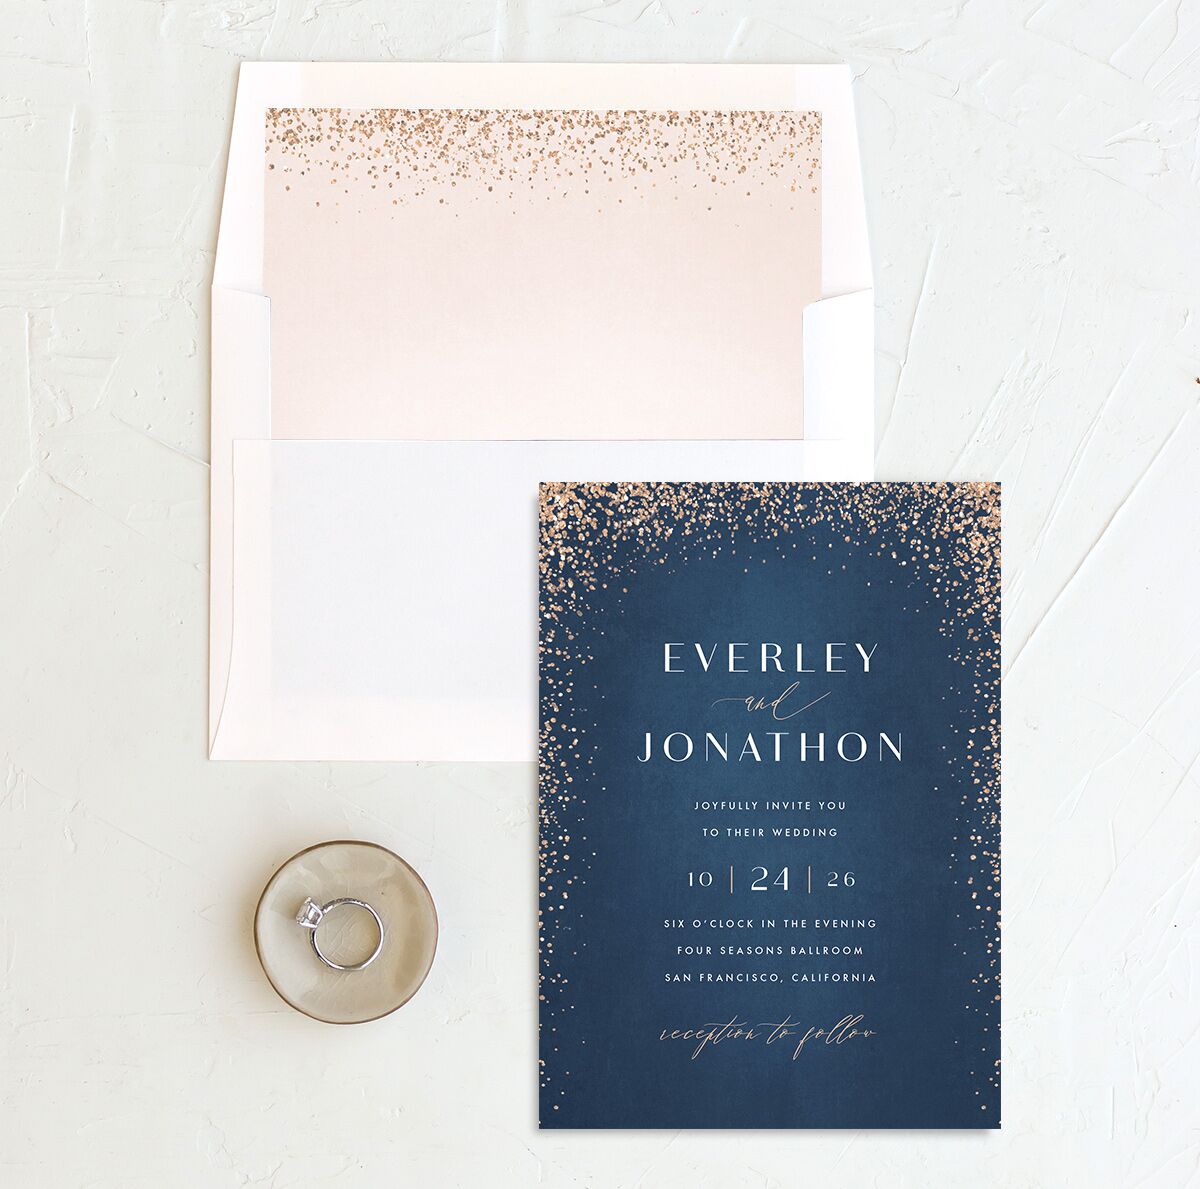 Sparkling Romance Standard Envelope Liners envelope-and-liner